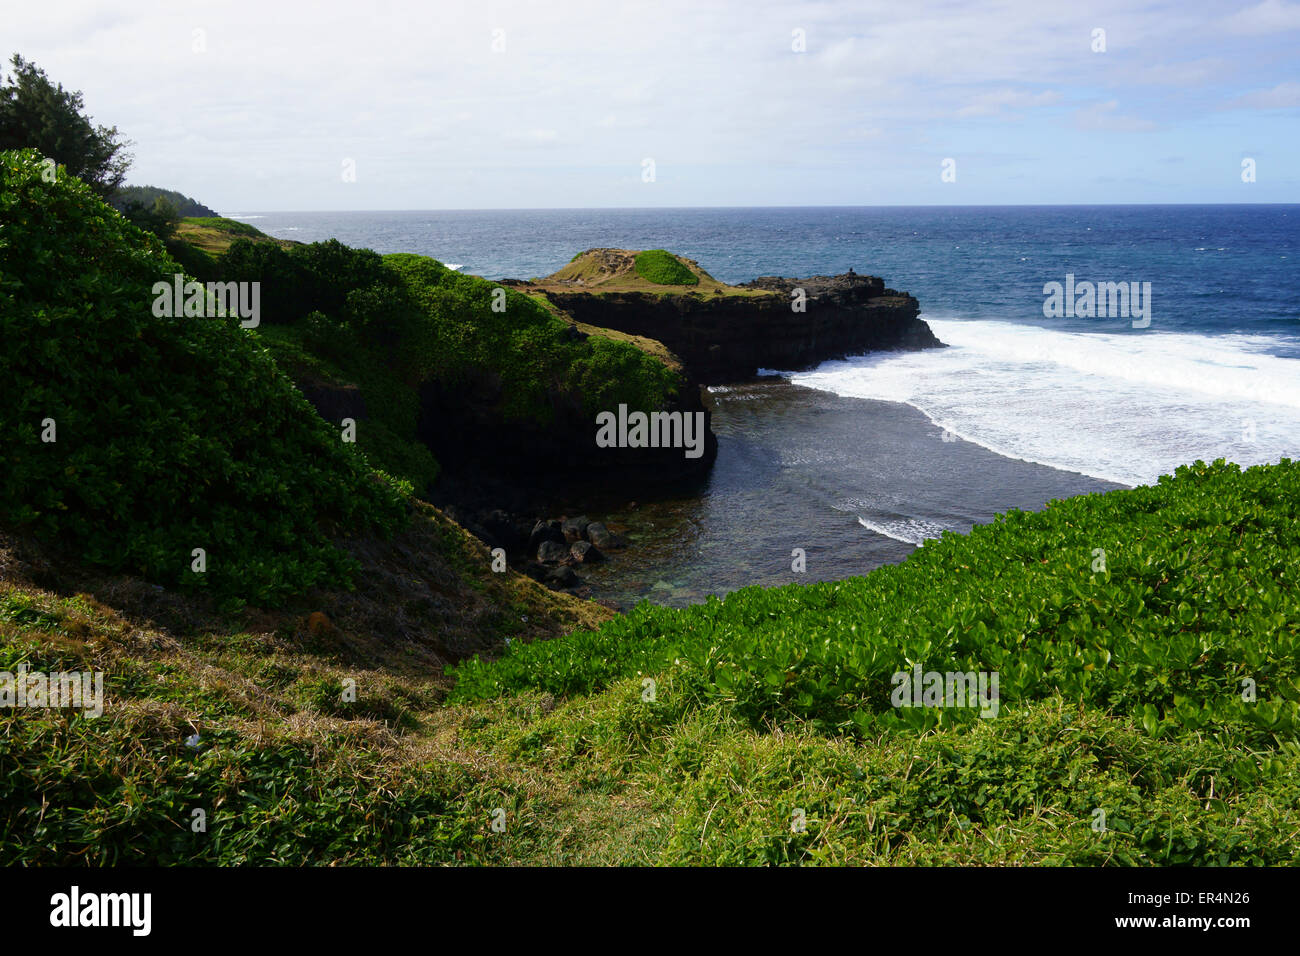 South coast of Island Mauritius Stock Photo